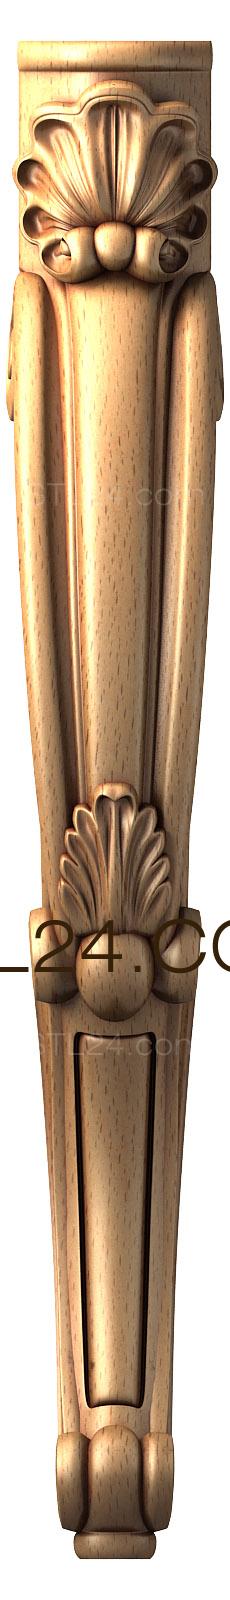 Ножки (NJ_0413) 3D модель для ЧПУ станка